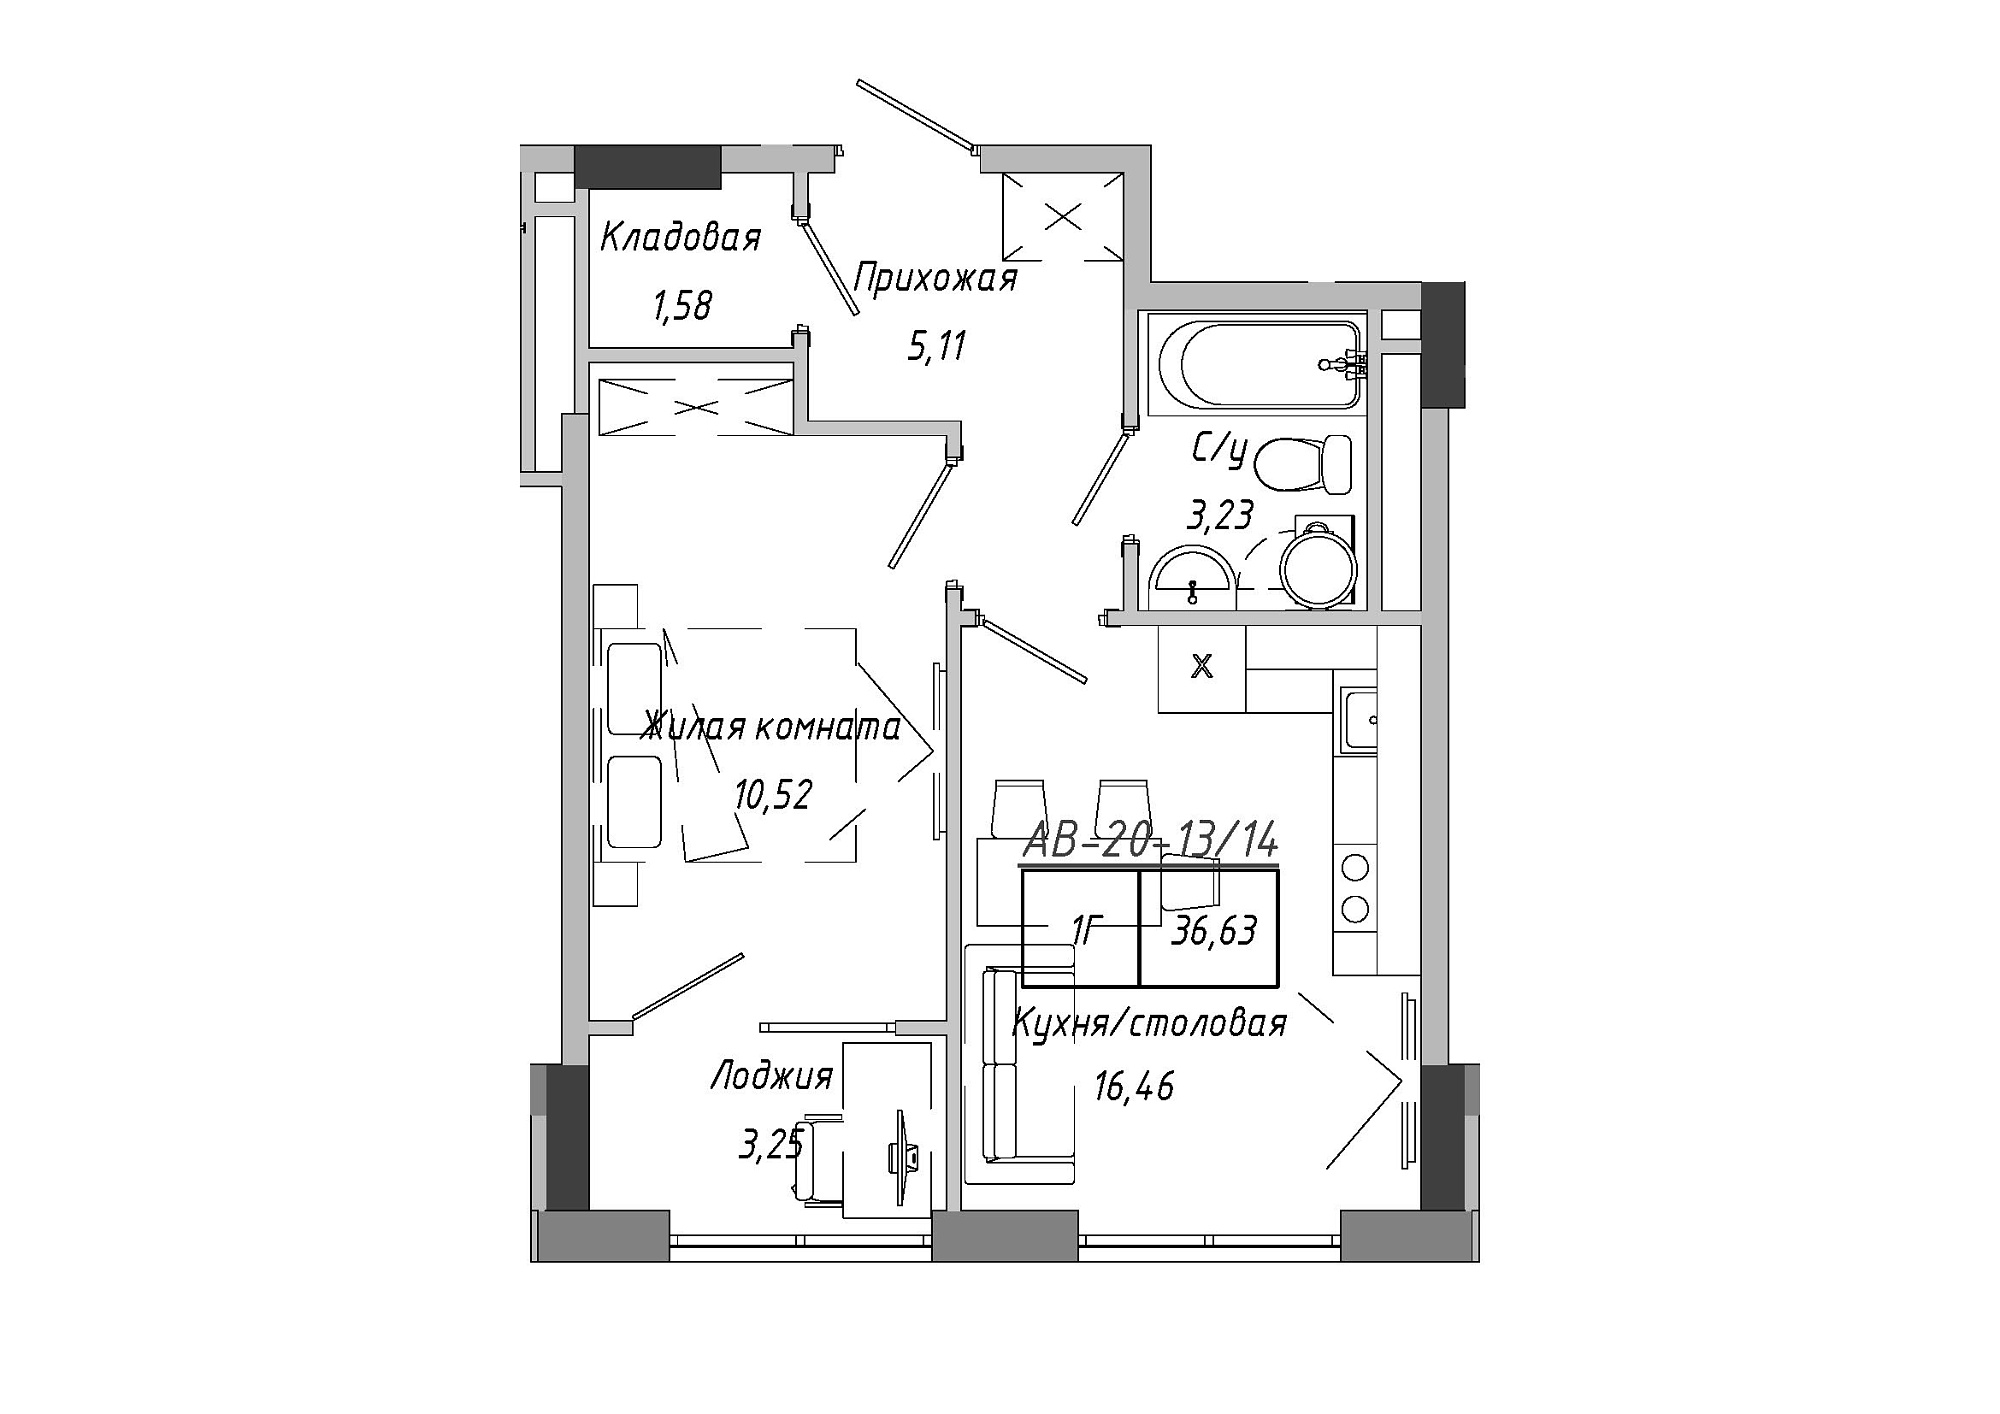 Планировка 1-к квартира площей 36.63м2, AB-20-13/00114.